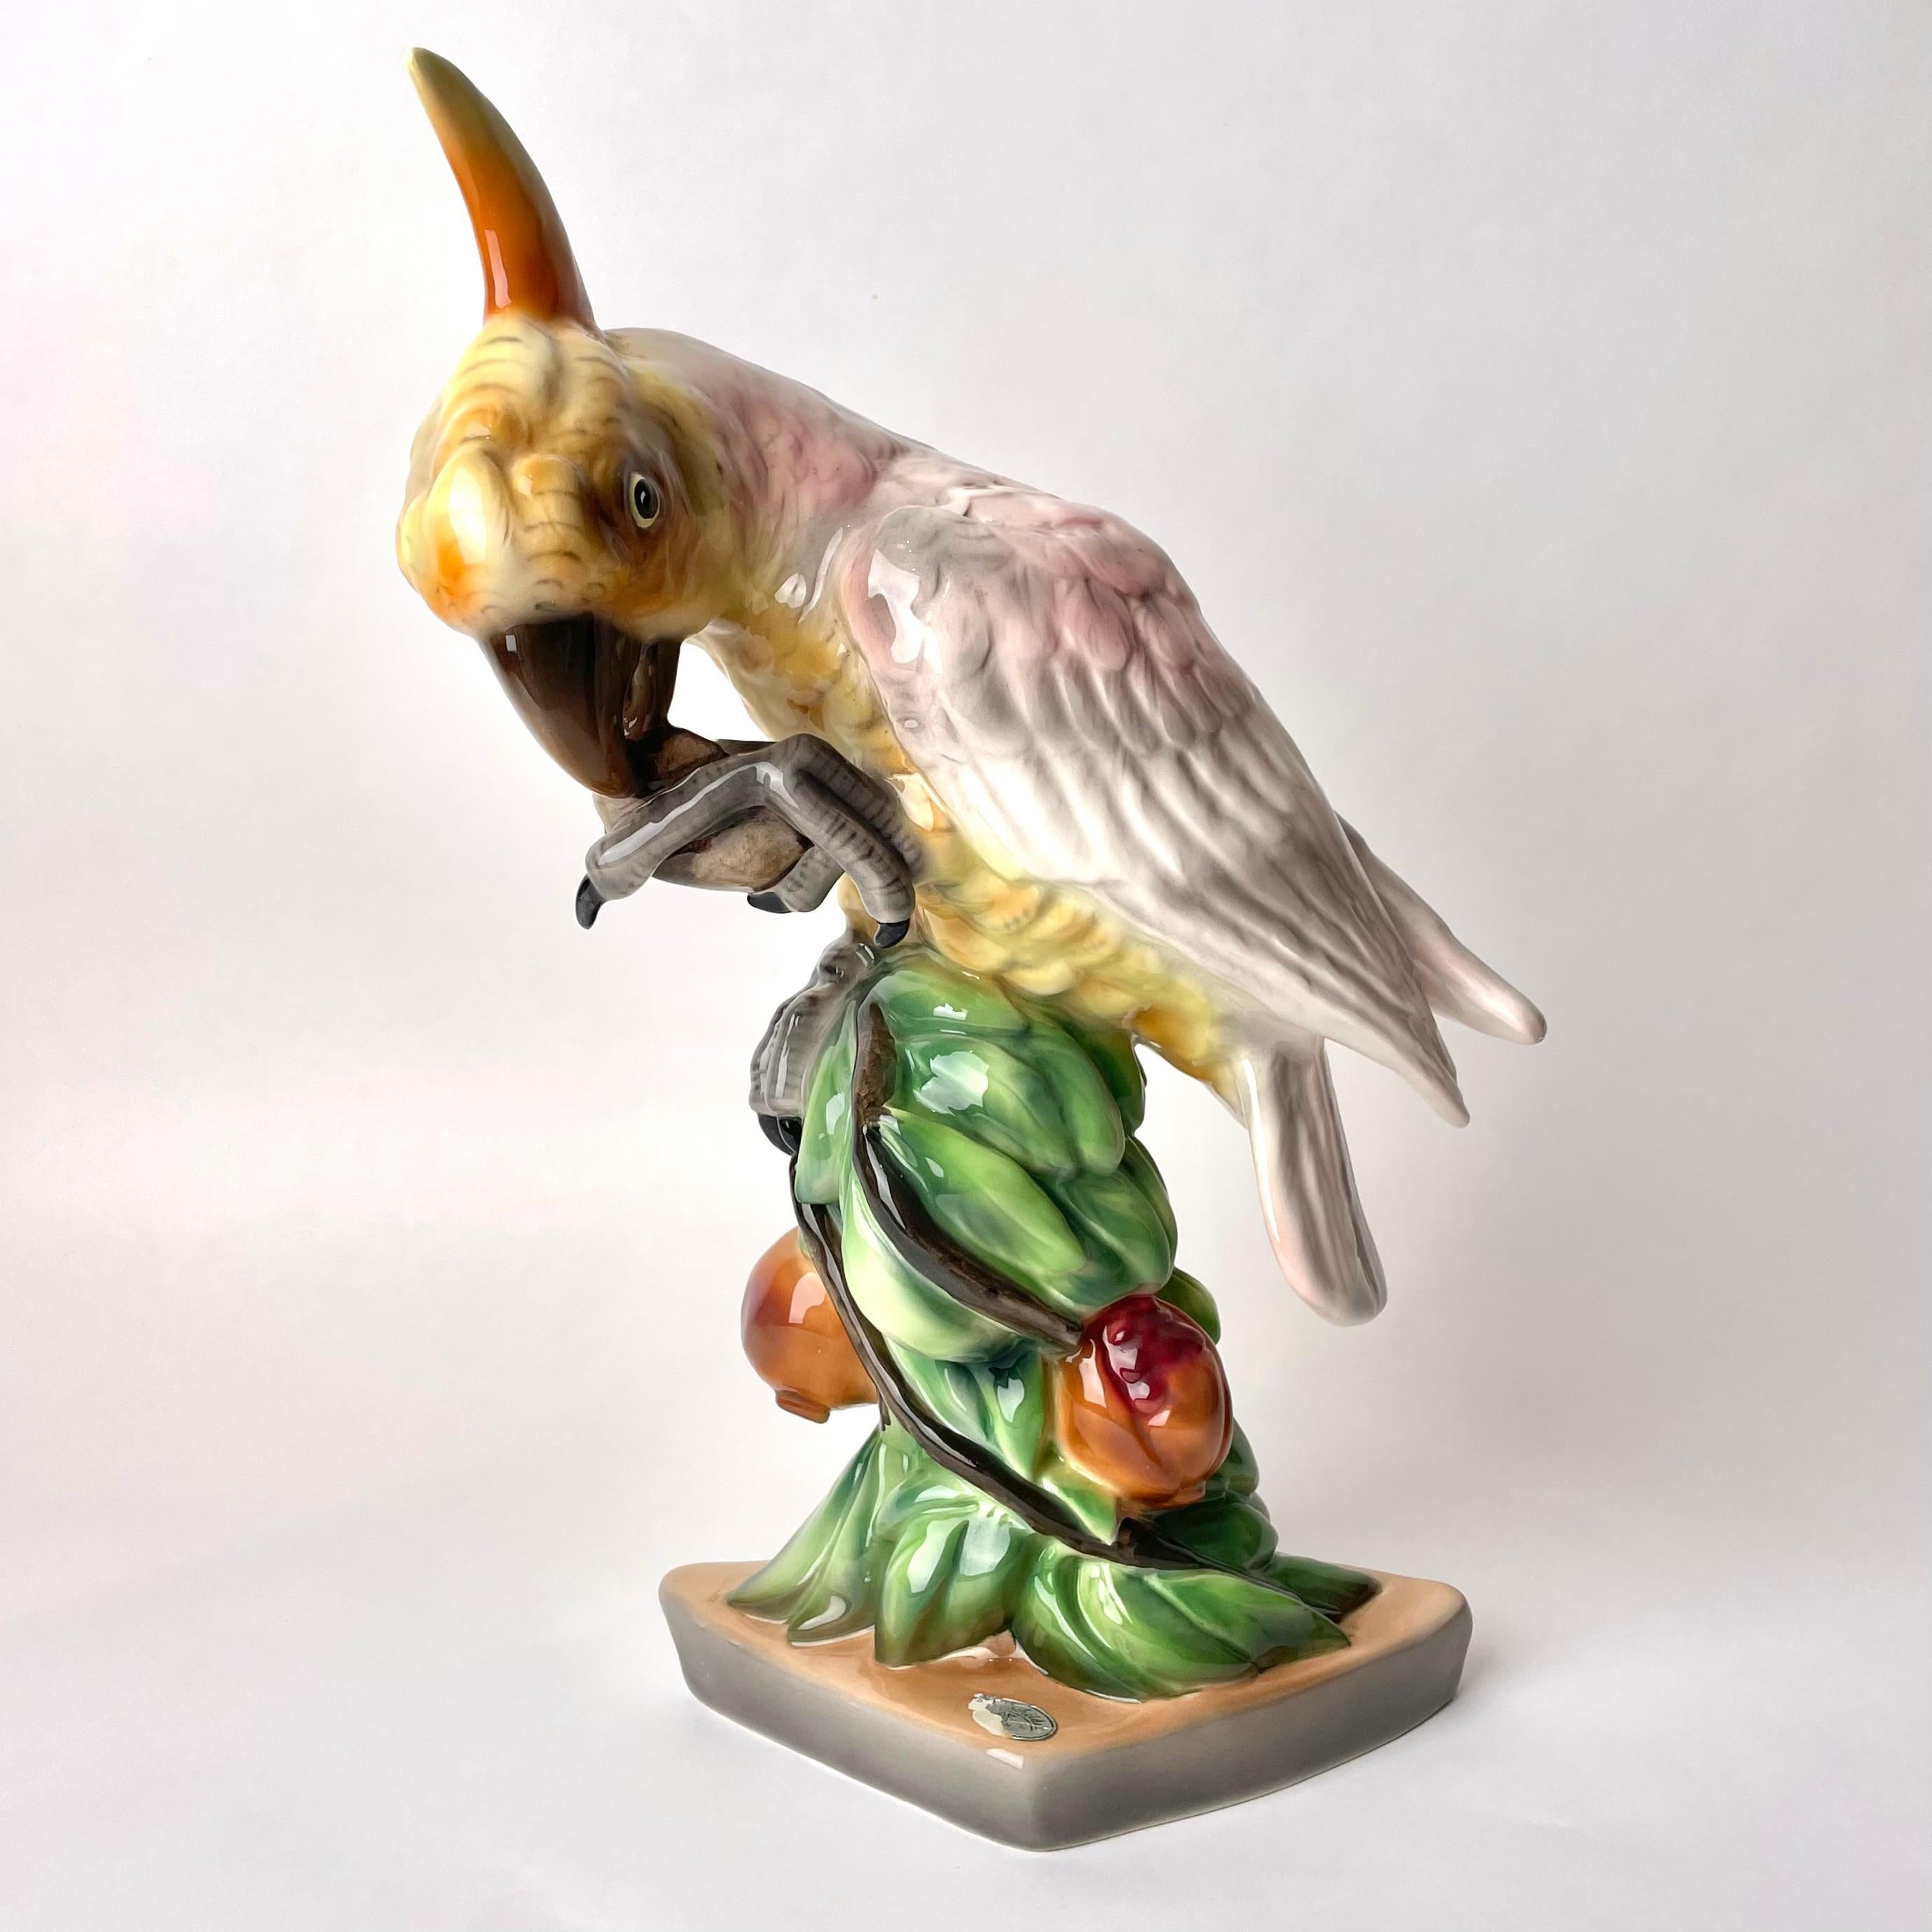 Wiener Porzellanfigur in Form eines auf einem Branch sitzenden Papageis mit Apfel, wohl 1920er Jahre

Diese charmante Porzellanfigur wurde von der bekannten Wiener Keramikfirma Goldscheider hergestellt. Das Unternehmen war einer der